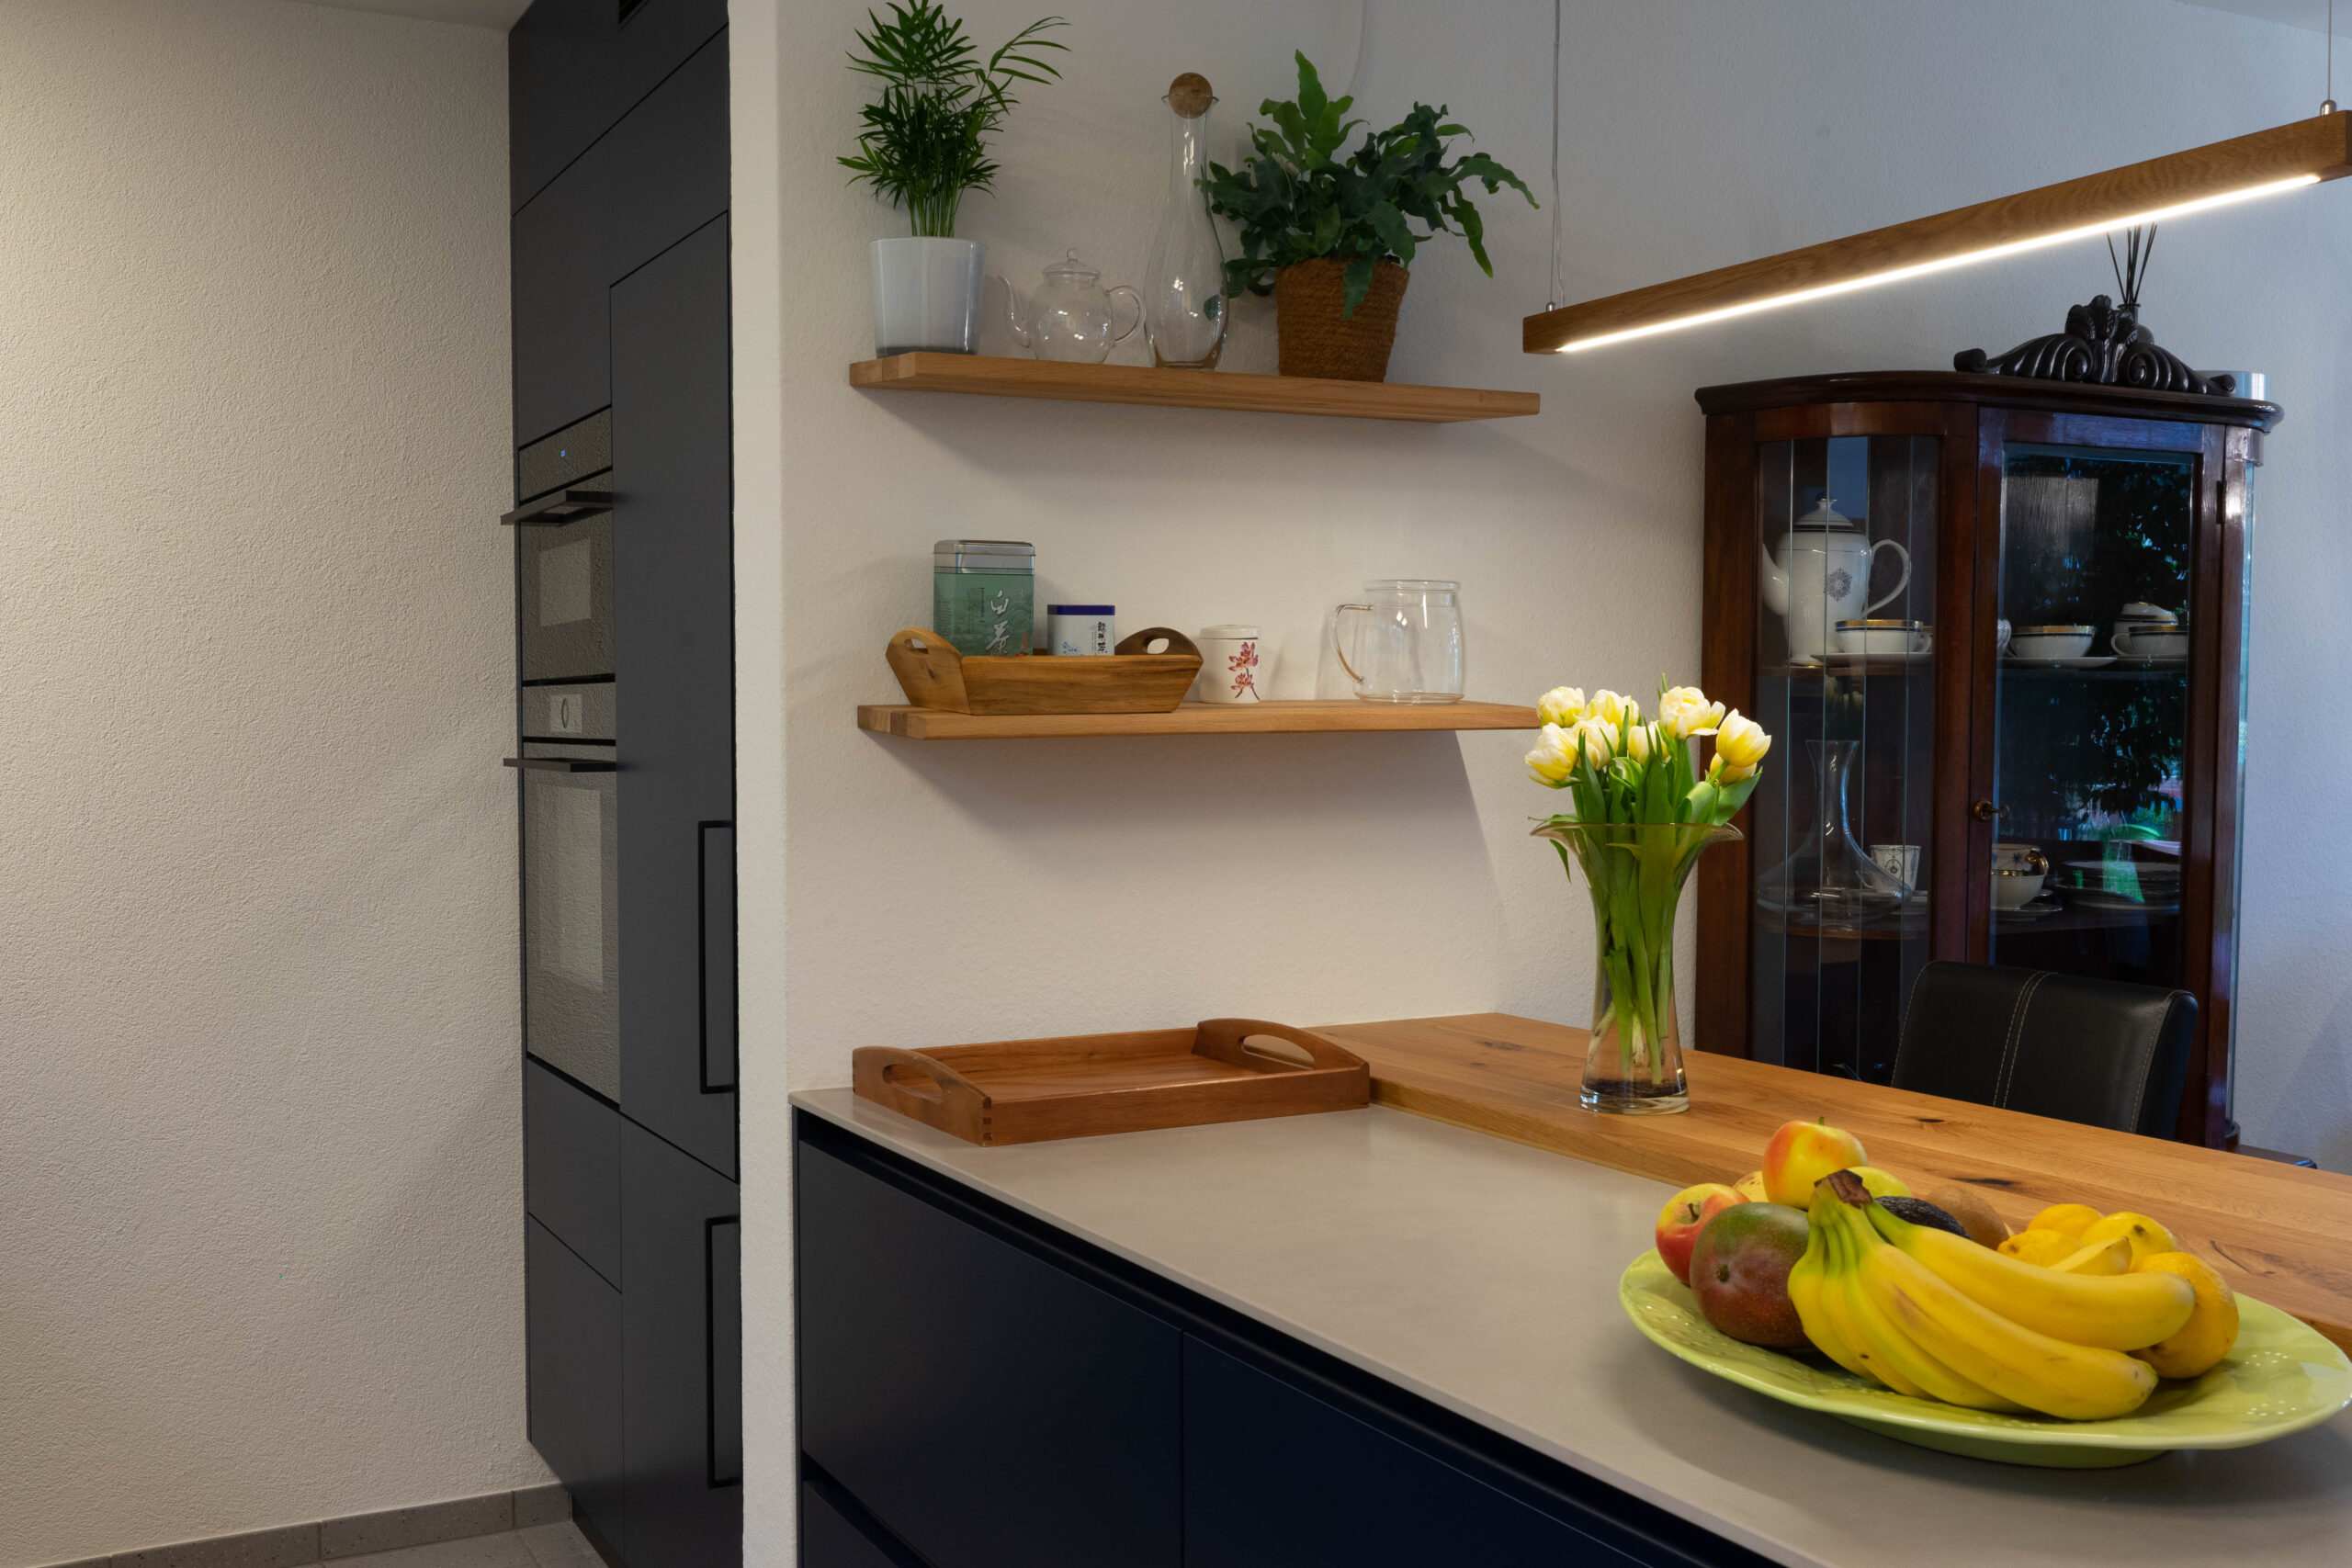 Fotos unseres Küche in Blau Projekts